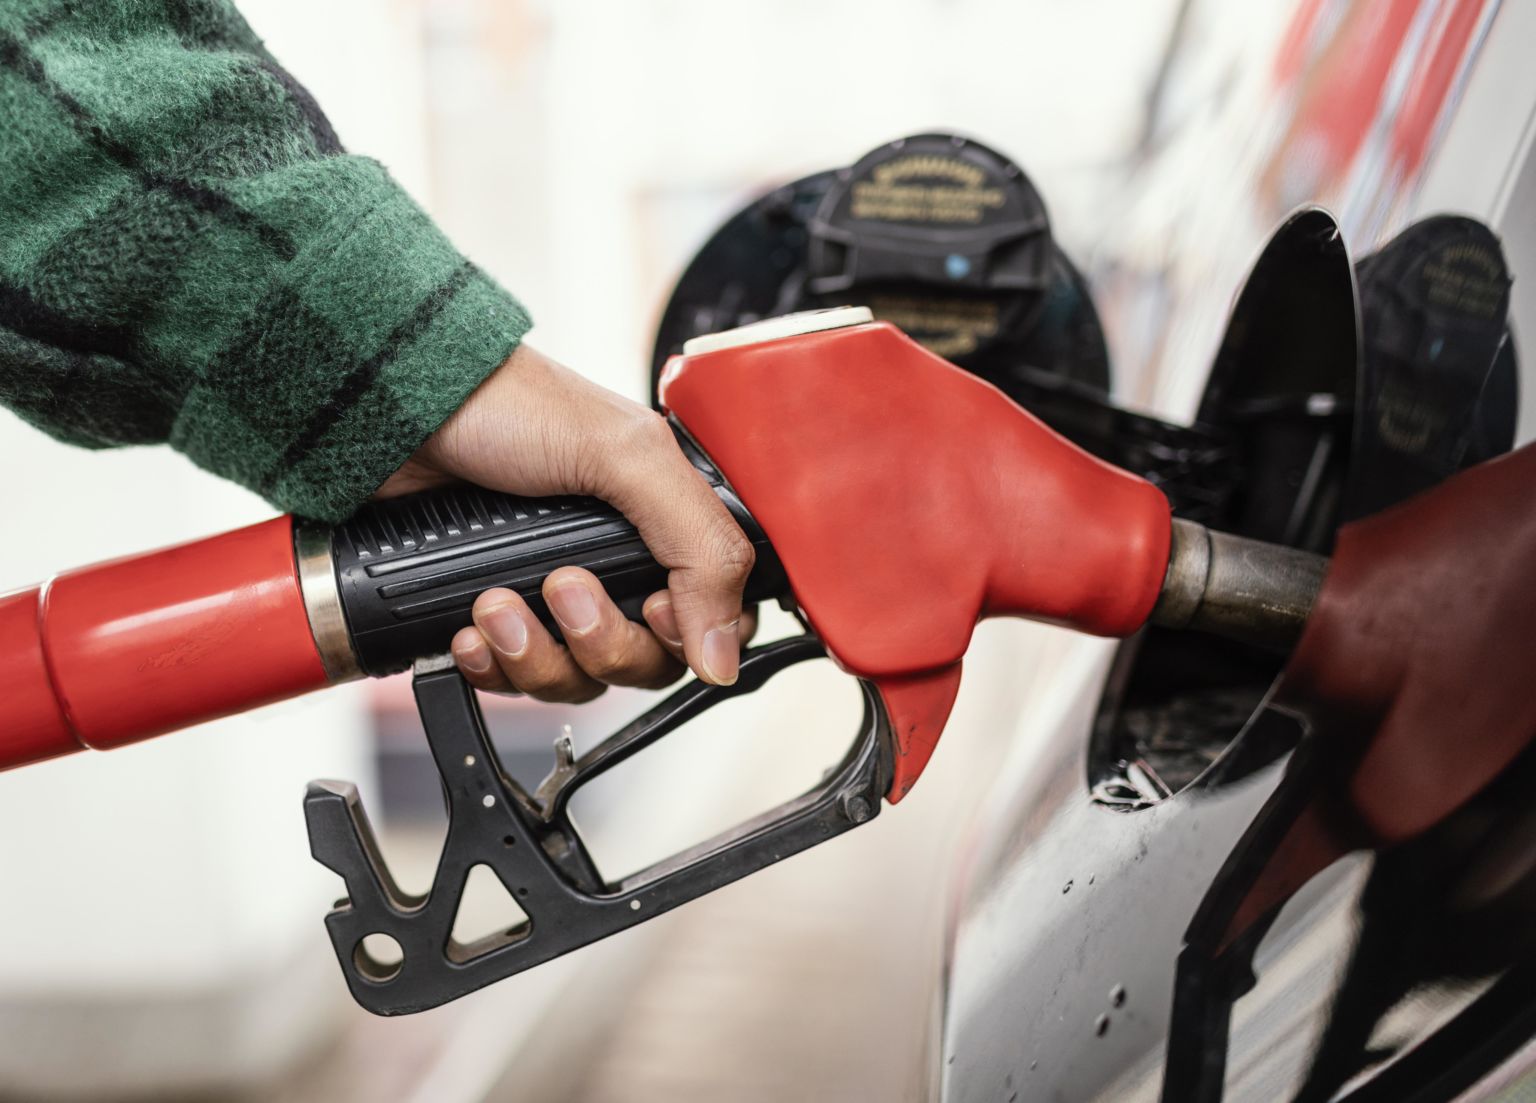 Gasolina mais cara puxa aumento de 0,26% da inflação em setembro